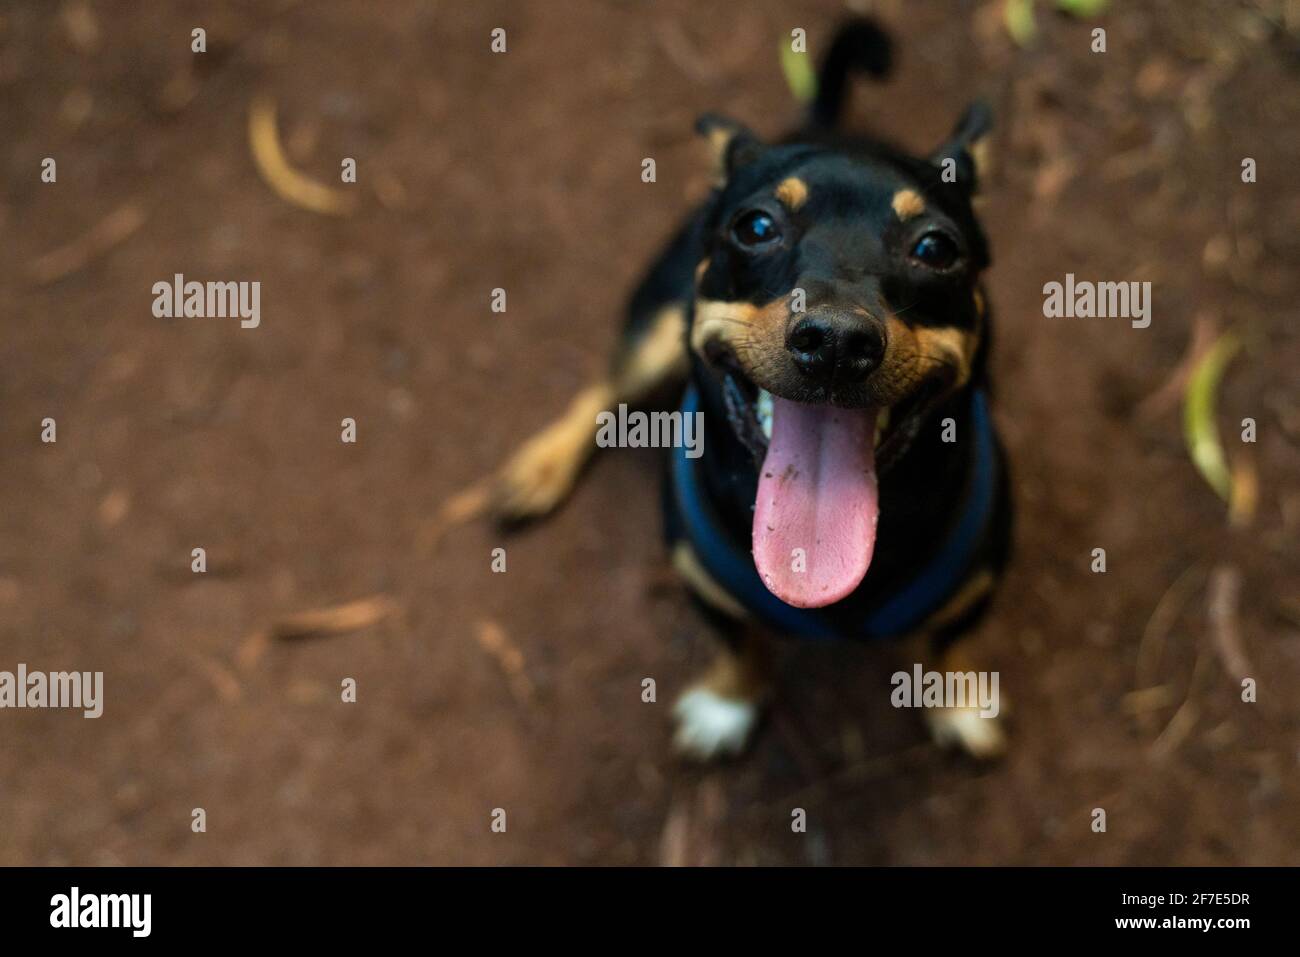 Alegre perro posando felizmente para una foto durante una caminata En Honolulu Foto de stock